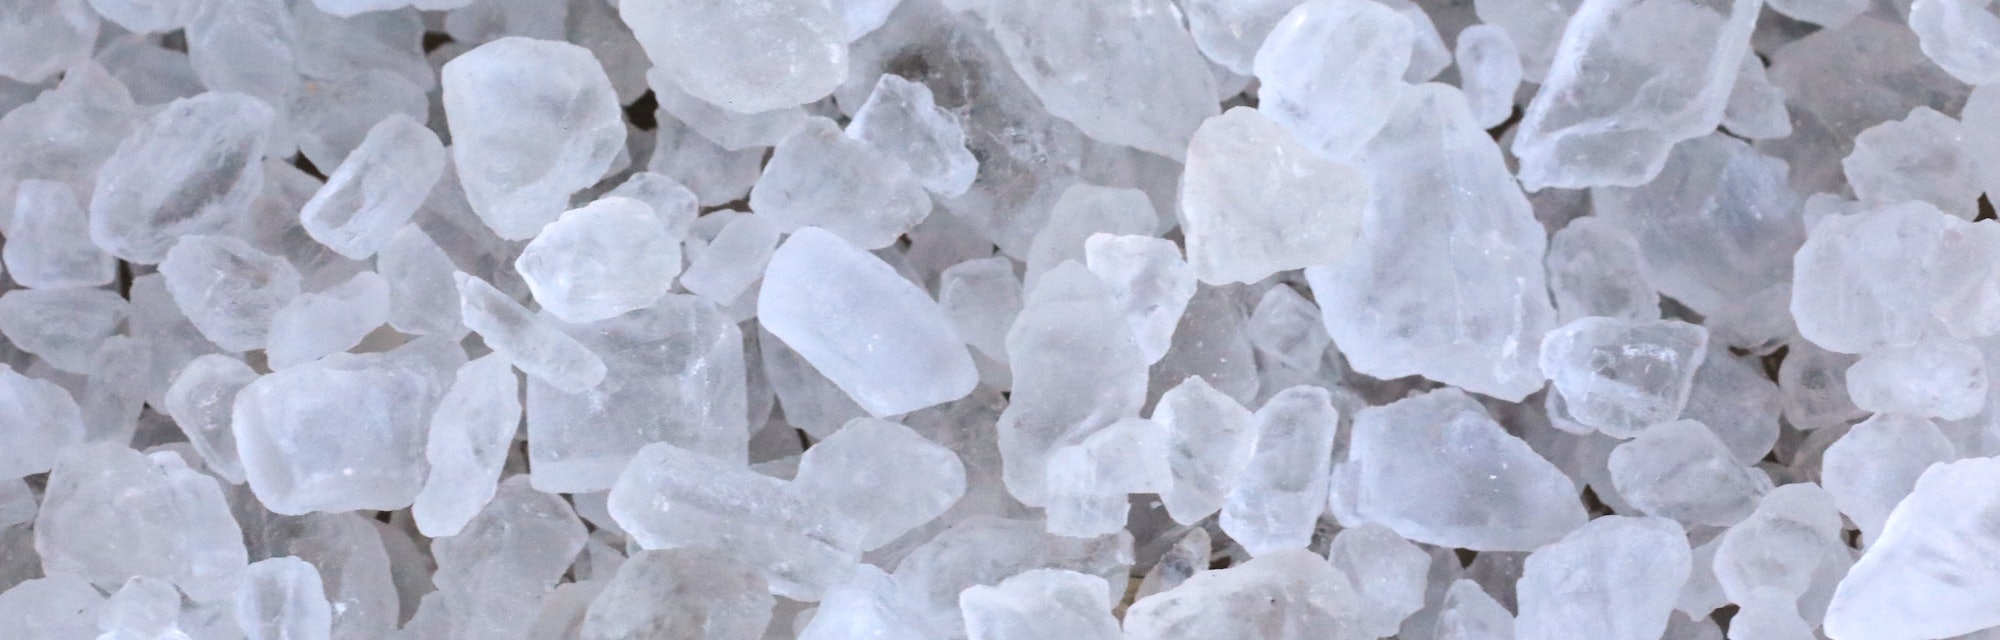 Crystal rock salt for road de-icing